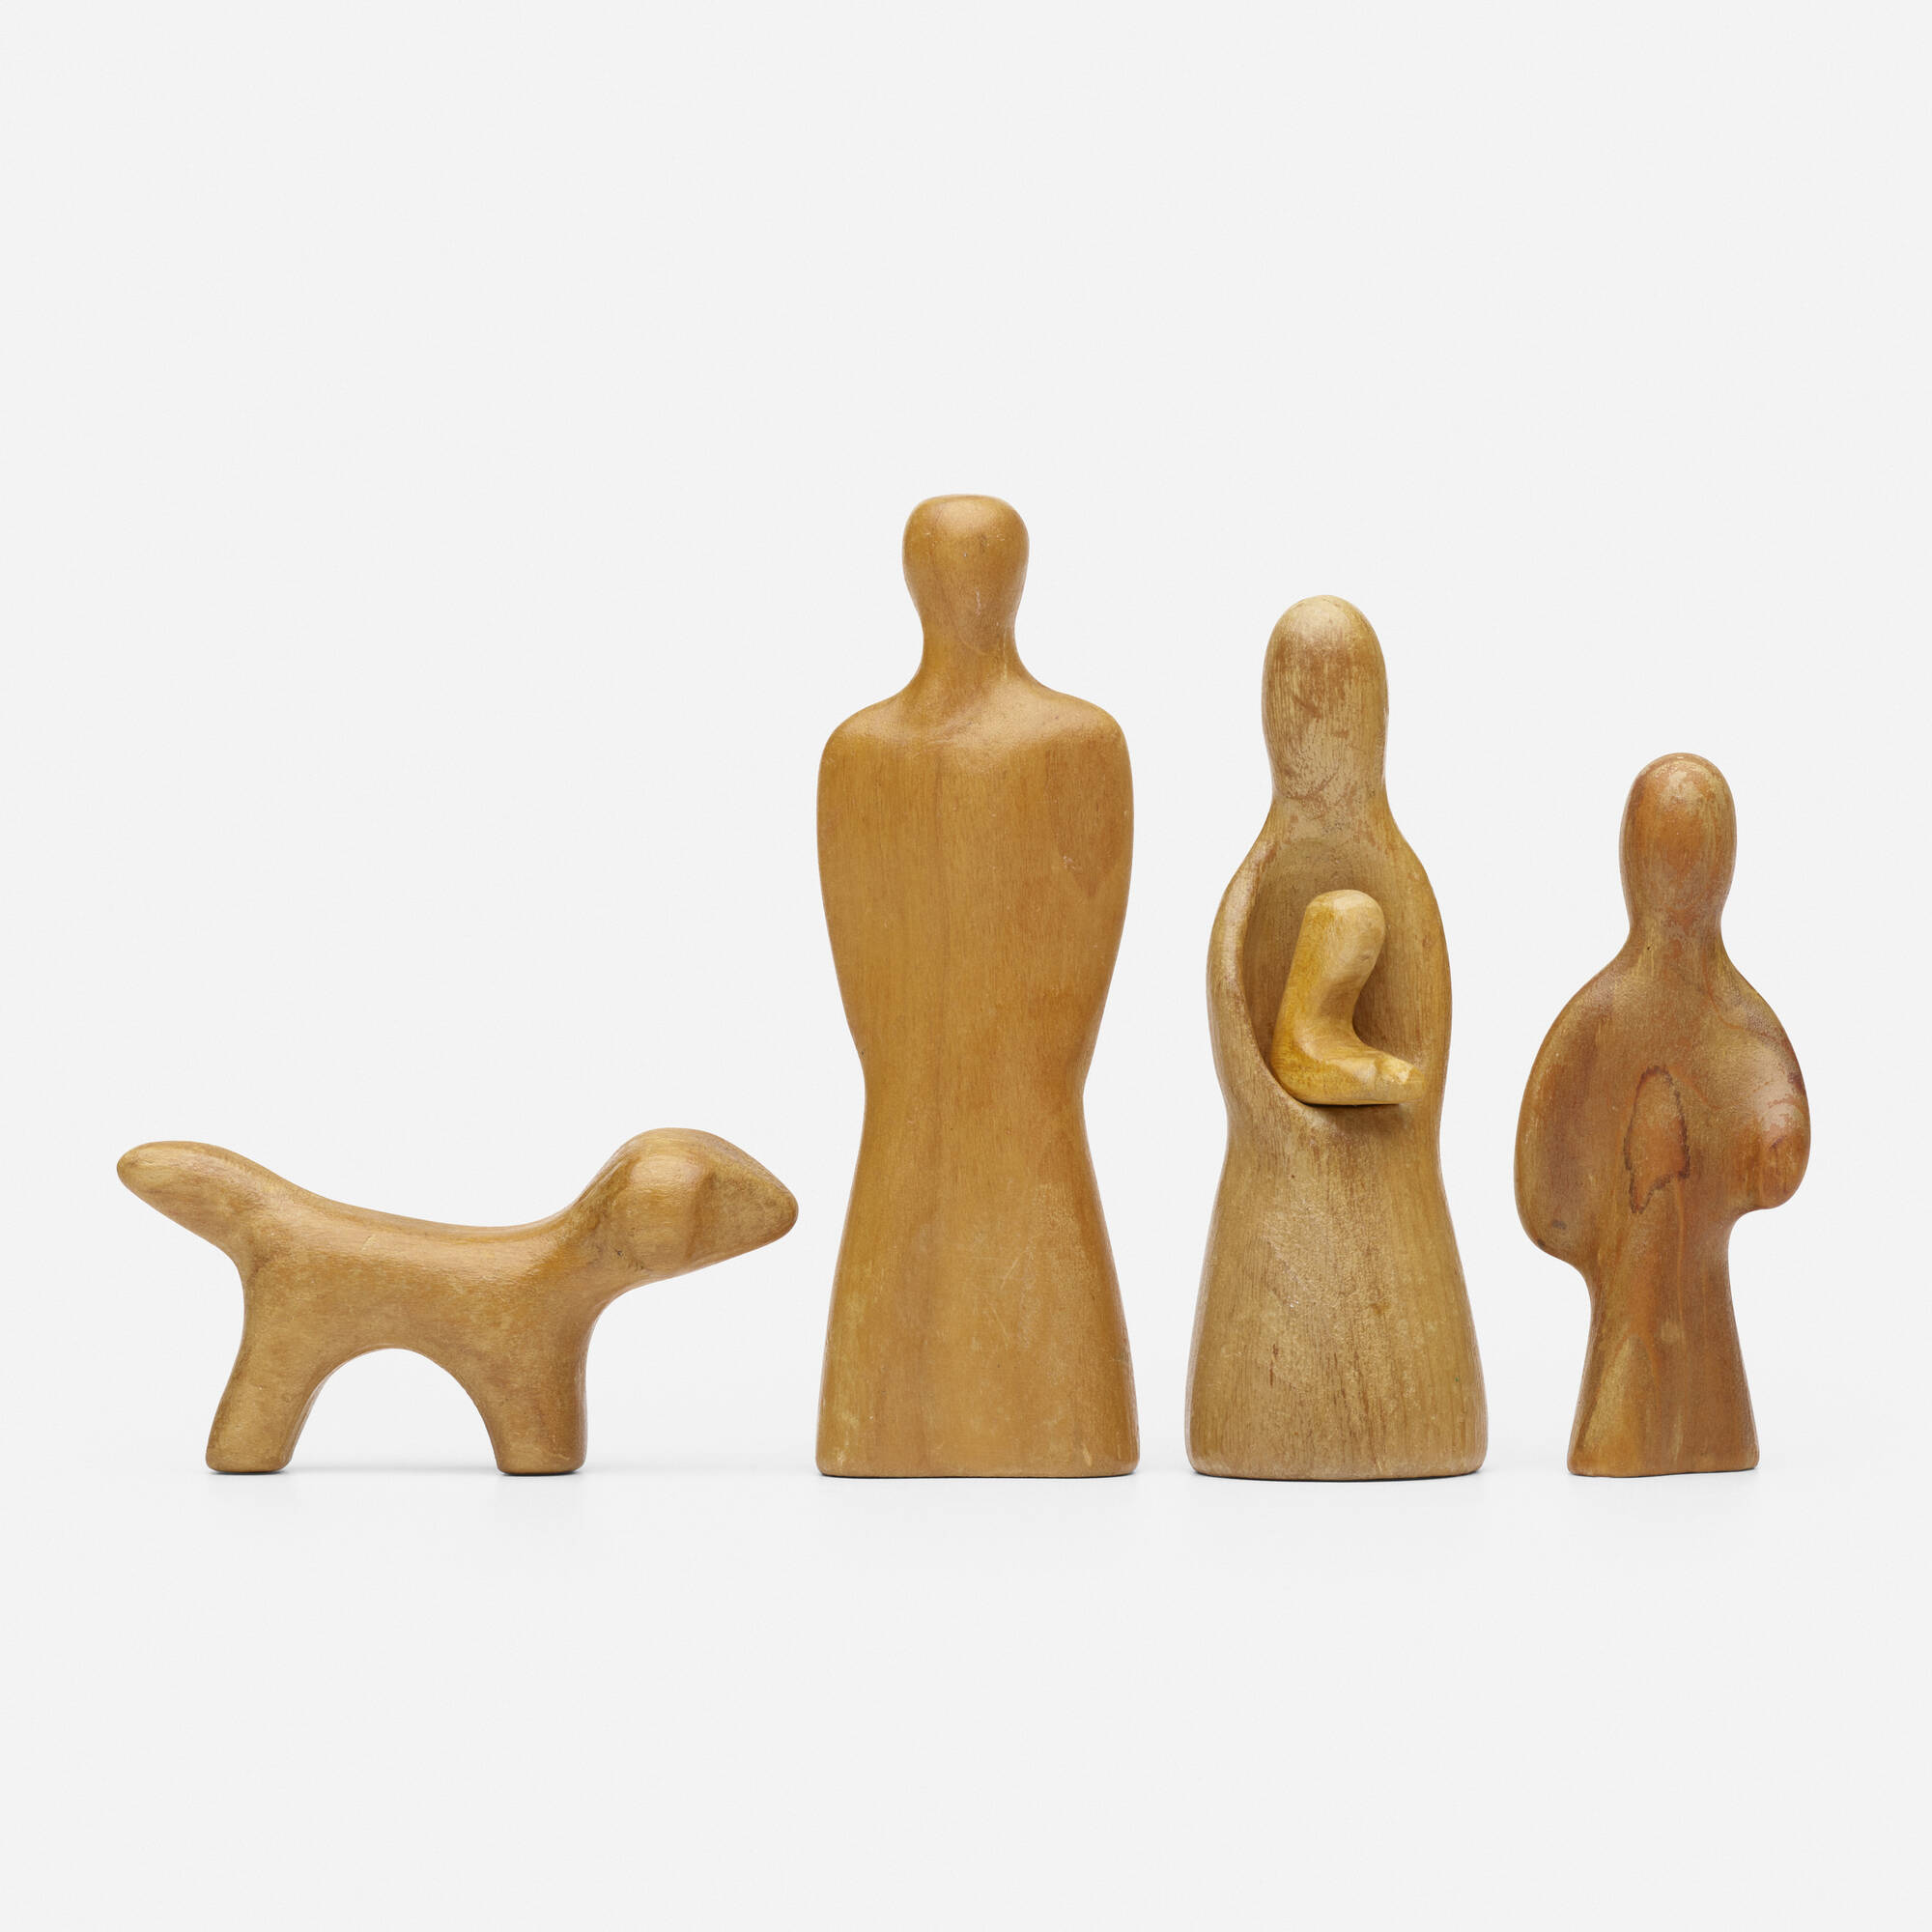 231: ANTONIO VITALI, Sculptured Family < Design, 11 June 2020